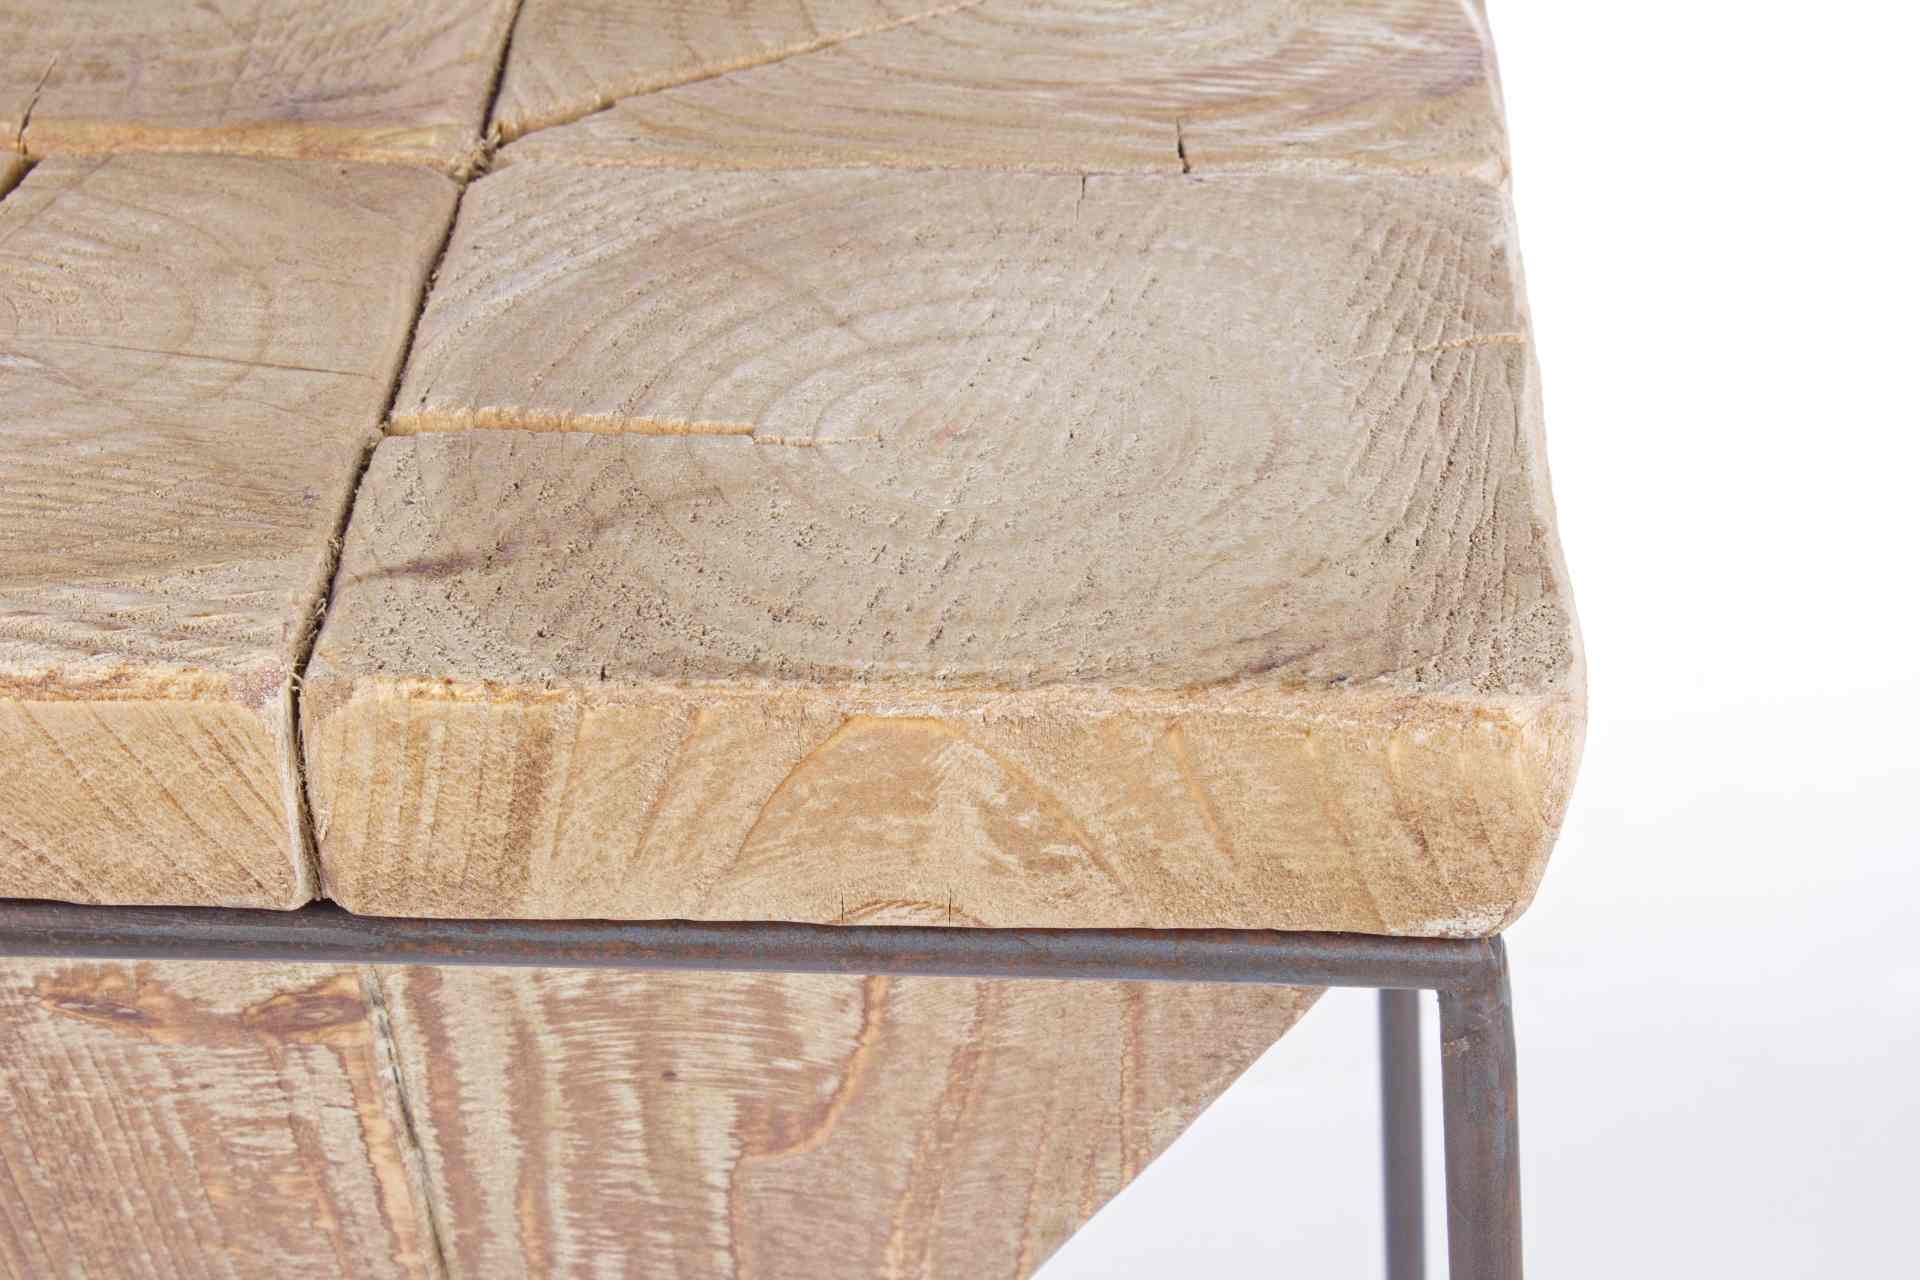 Der Barhocker Prismy überzeugt mit seinem massivem Design. Gefertigt wurde er aus Tannenholz, welches einen natürlichen Farbton besitzt. Das Gestell ist aus Metall und hat eine Anthrazit Farbe. Die Sitzhöhe beträgt 70 cm.